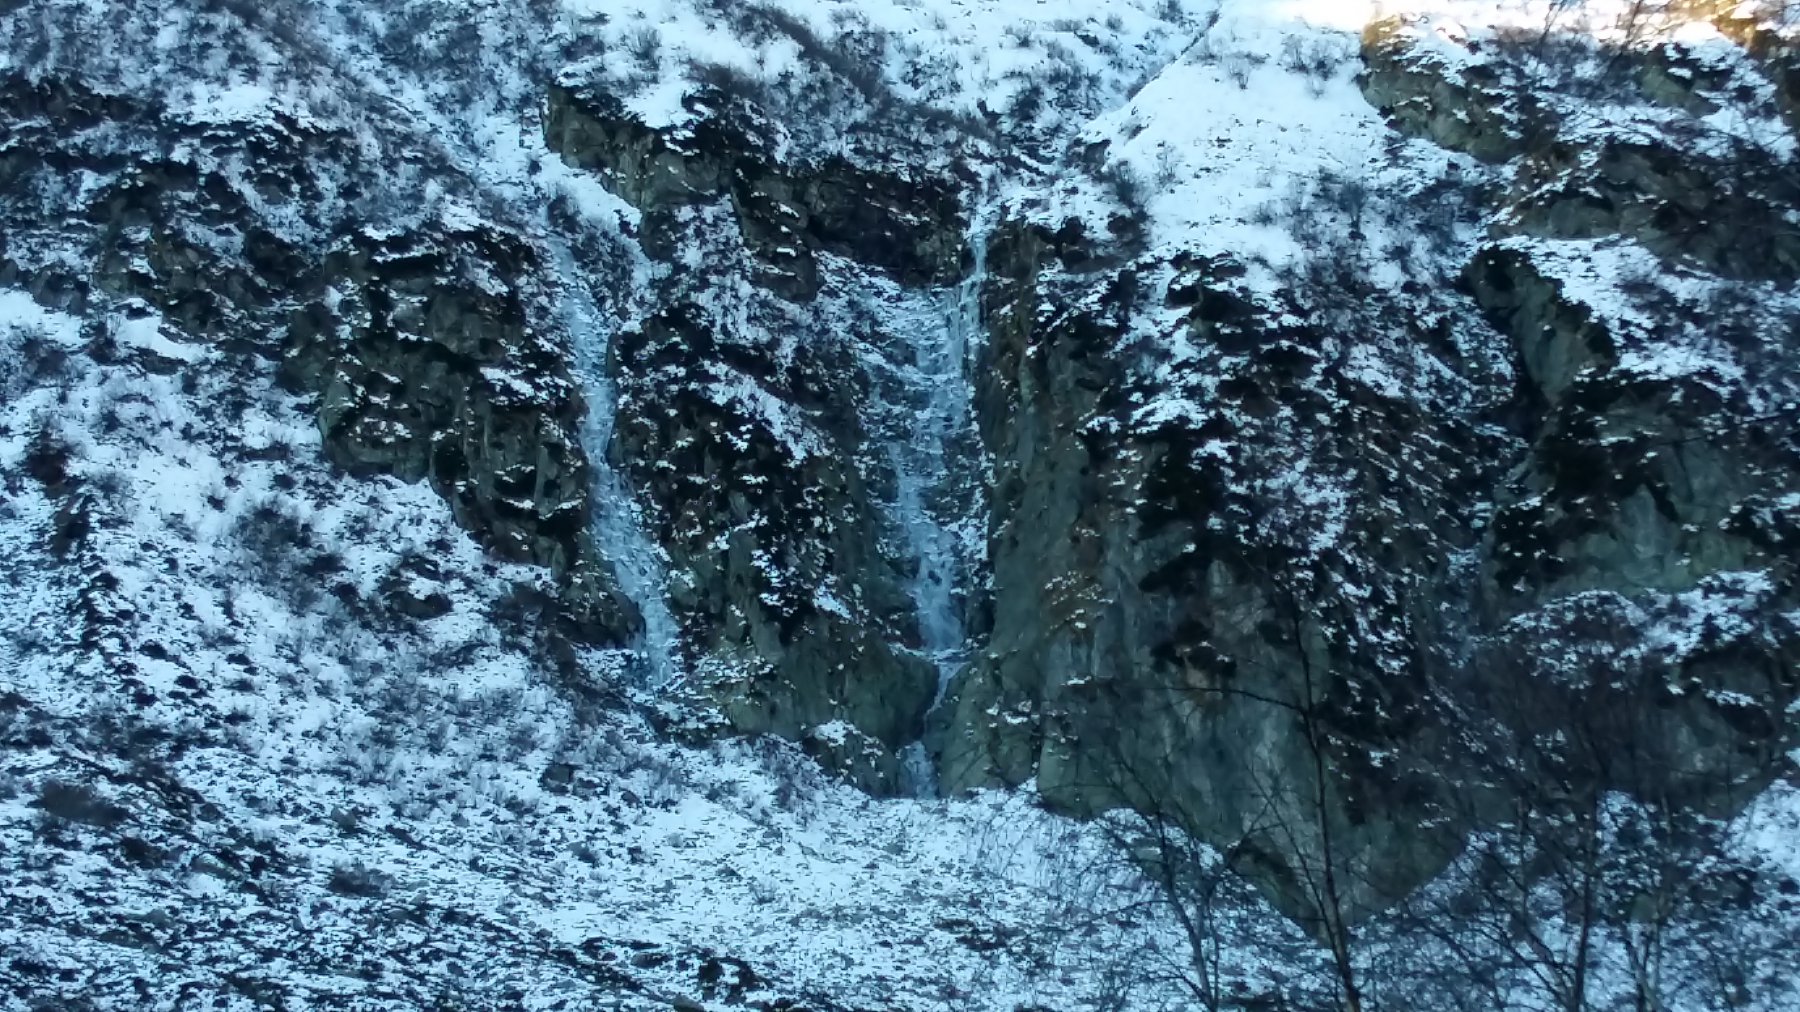 due belle cascate in formazione a fondo valle , sotto il colle Irogna.